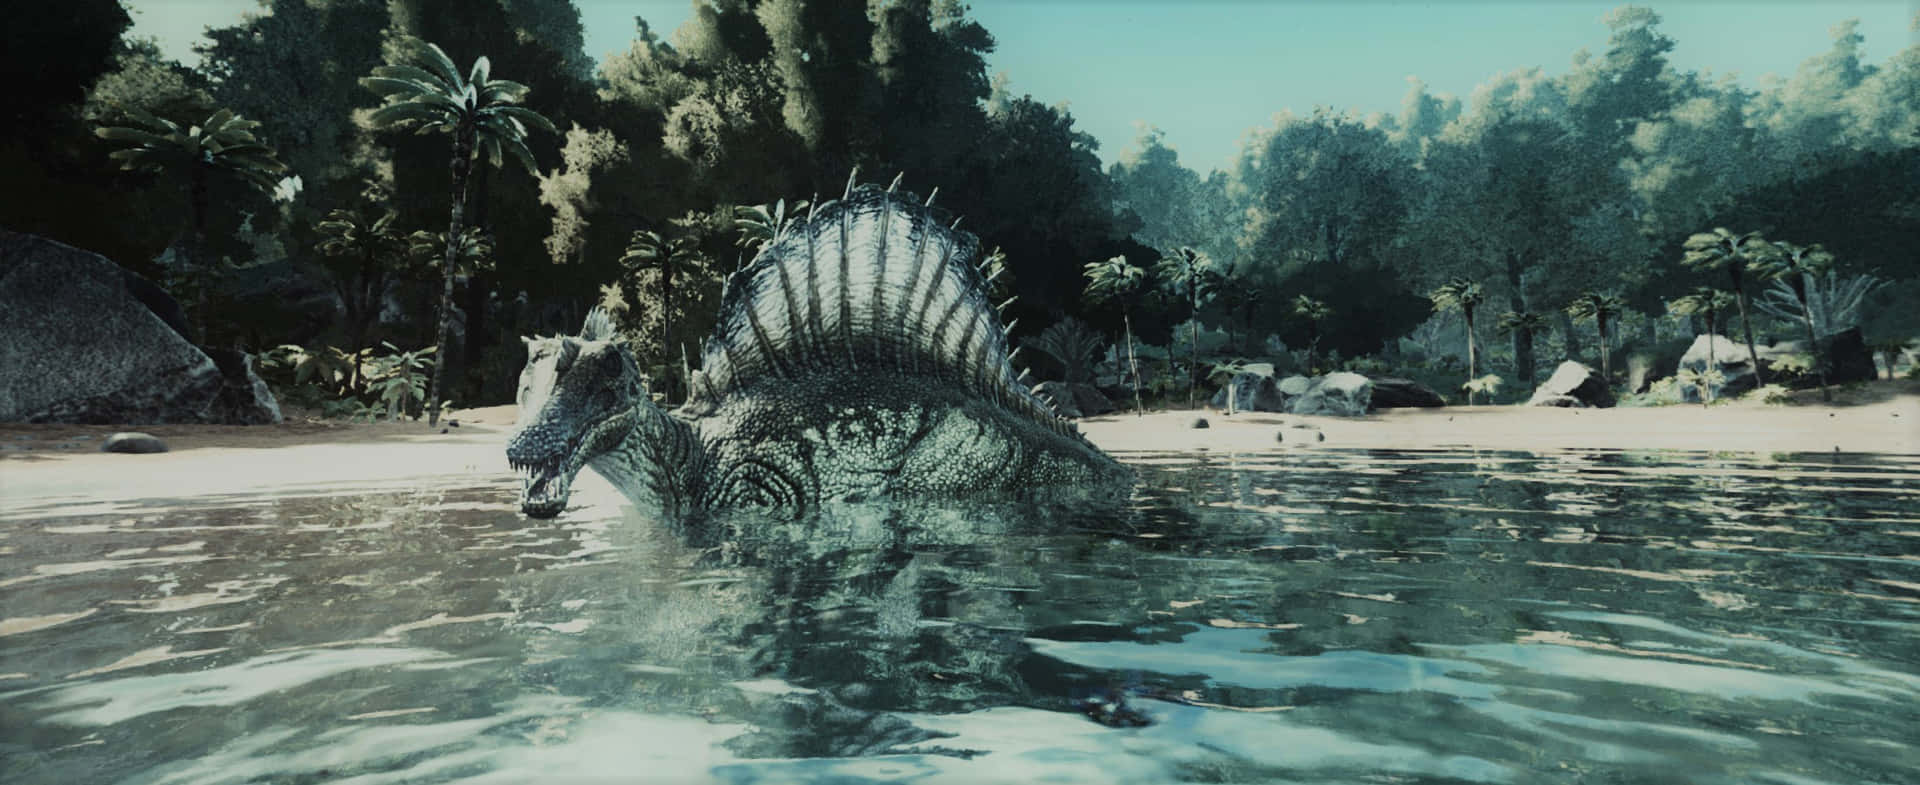 Enstor Dinosaur Svømmer I Vandet. Wallpaper